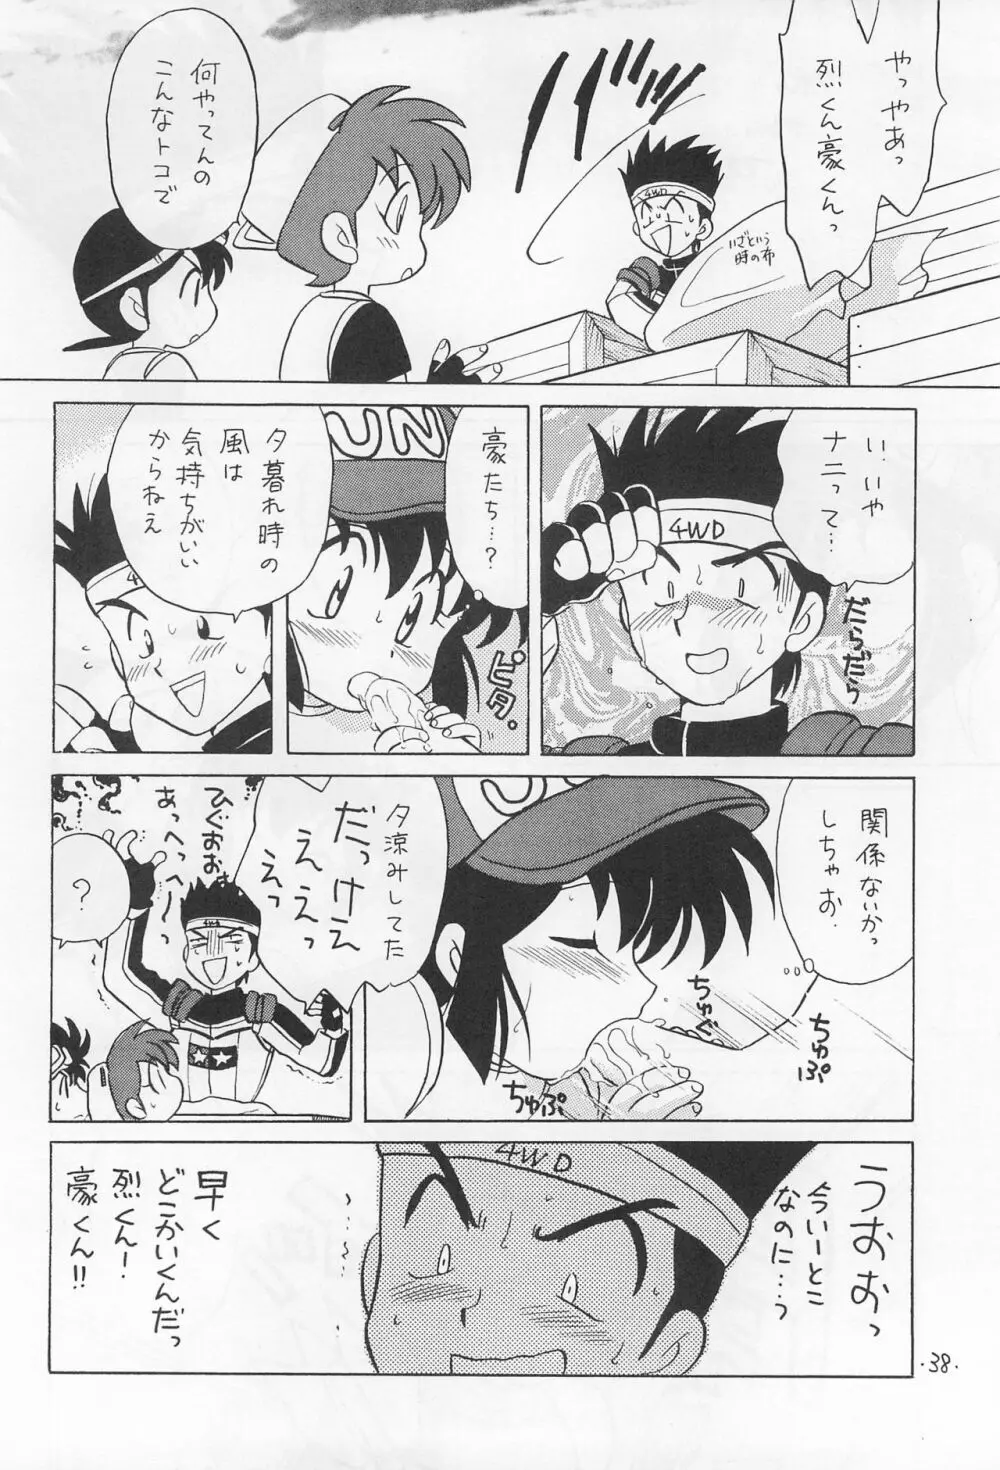 ミニ四ファイタージュンちゃん!! - page40